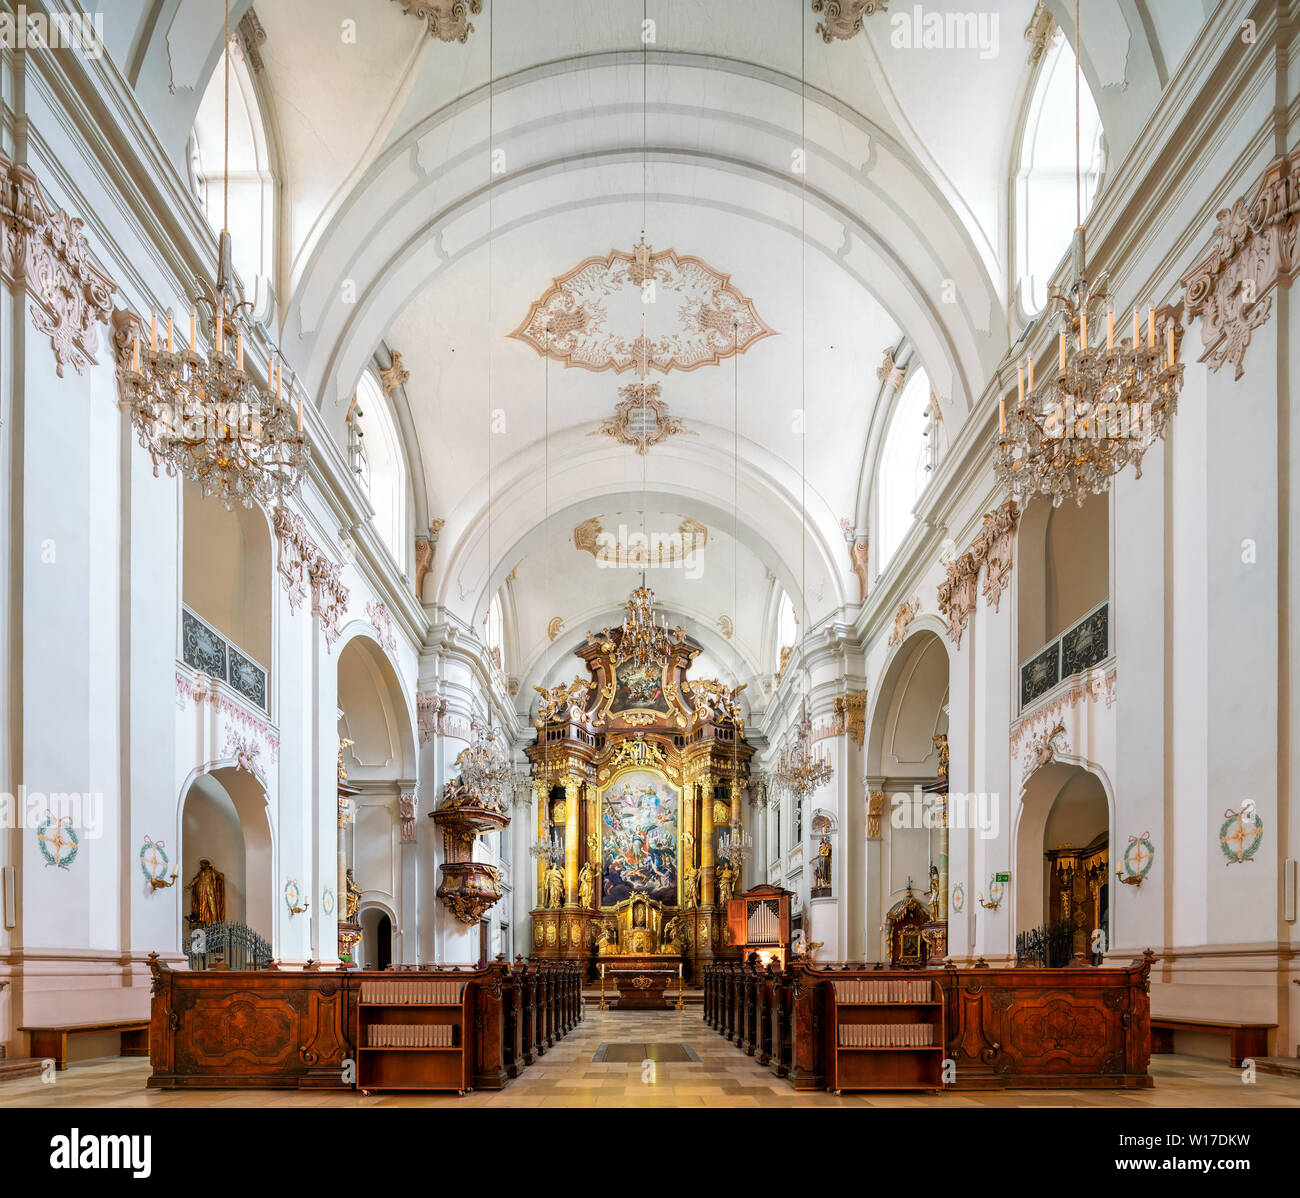 La Chiesa delle Orsoline, Ursulinenkirche, in Linz, Austria, dedicata a San Michele Arcangelo. Con un altare che mostra l'arcangelo Di Martino Altomonte Foto Stock